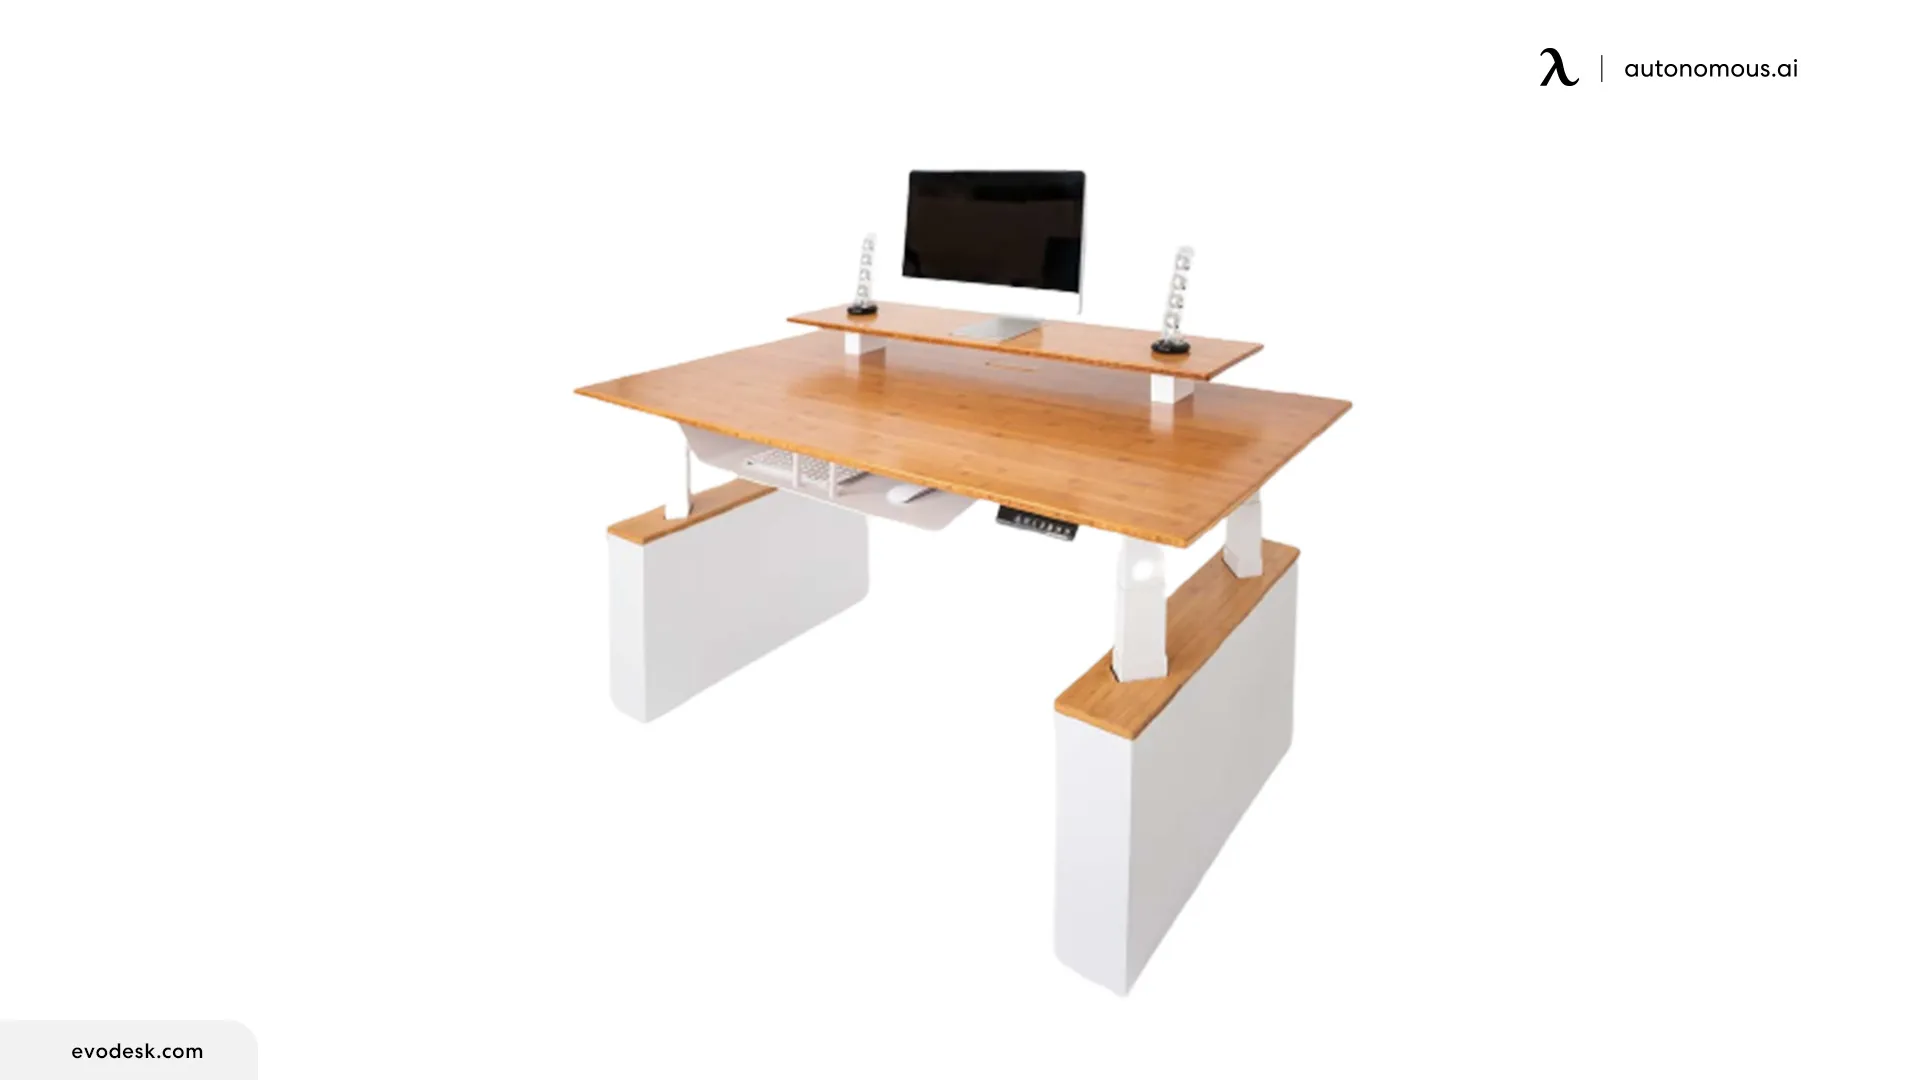 Evodesk Pro™ Four Column Desk